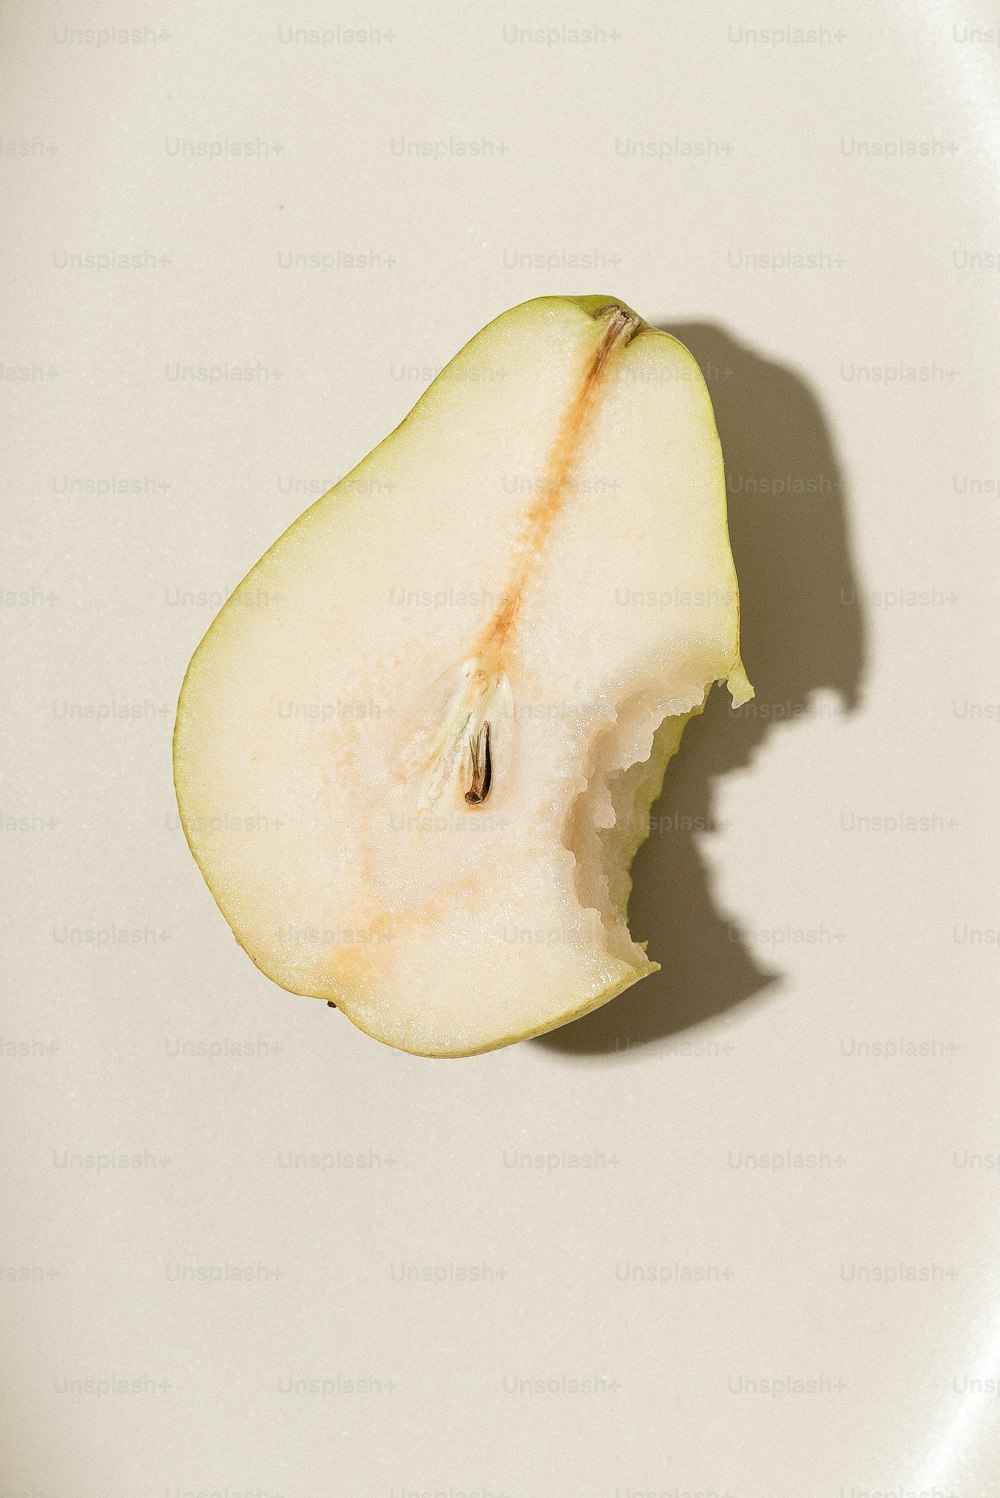 Ein halb gegessener Apfel sitzt auf einem weißen Teller